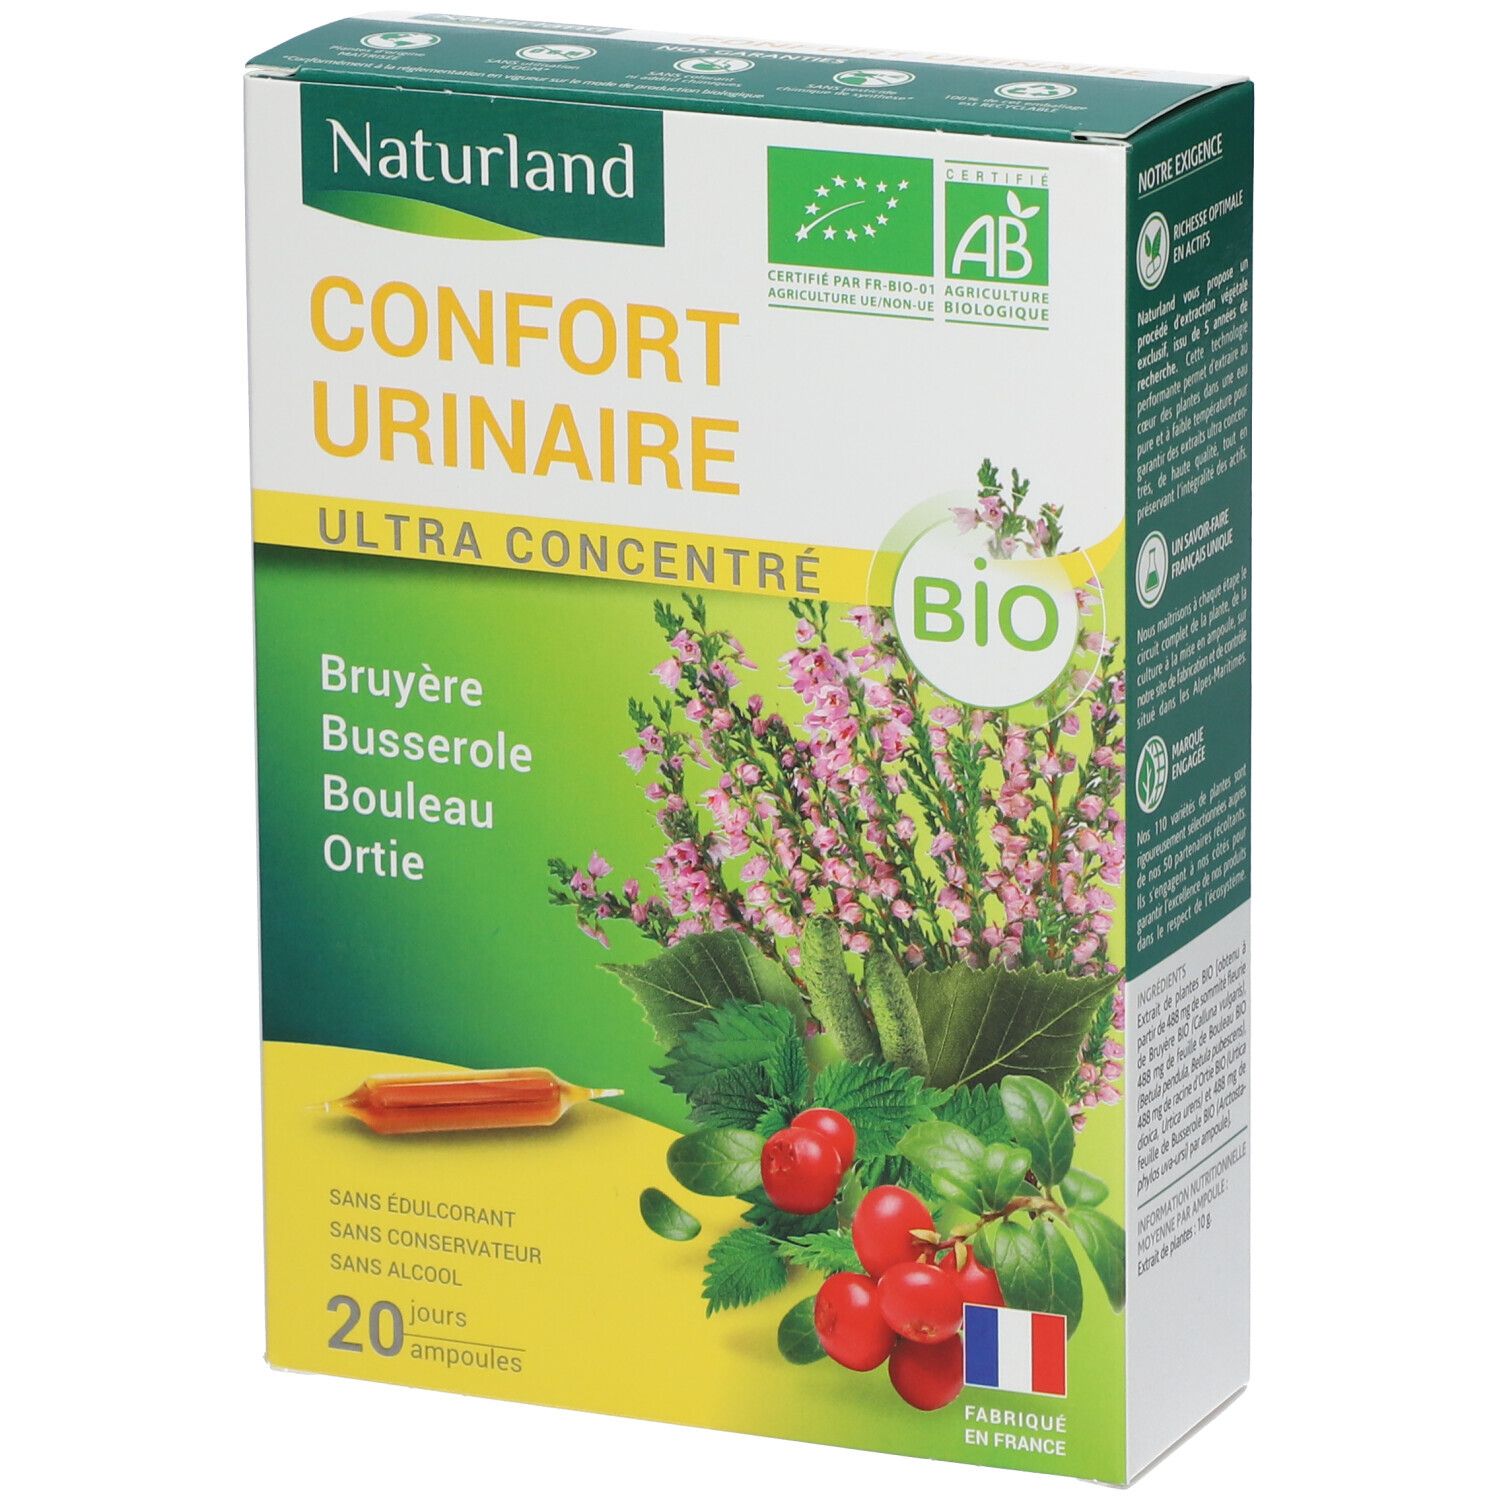 Naturland Confort Urinaire